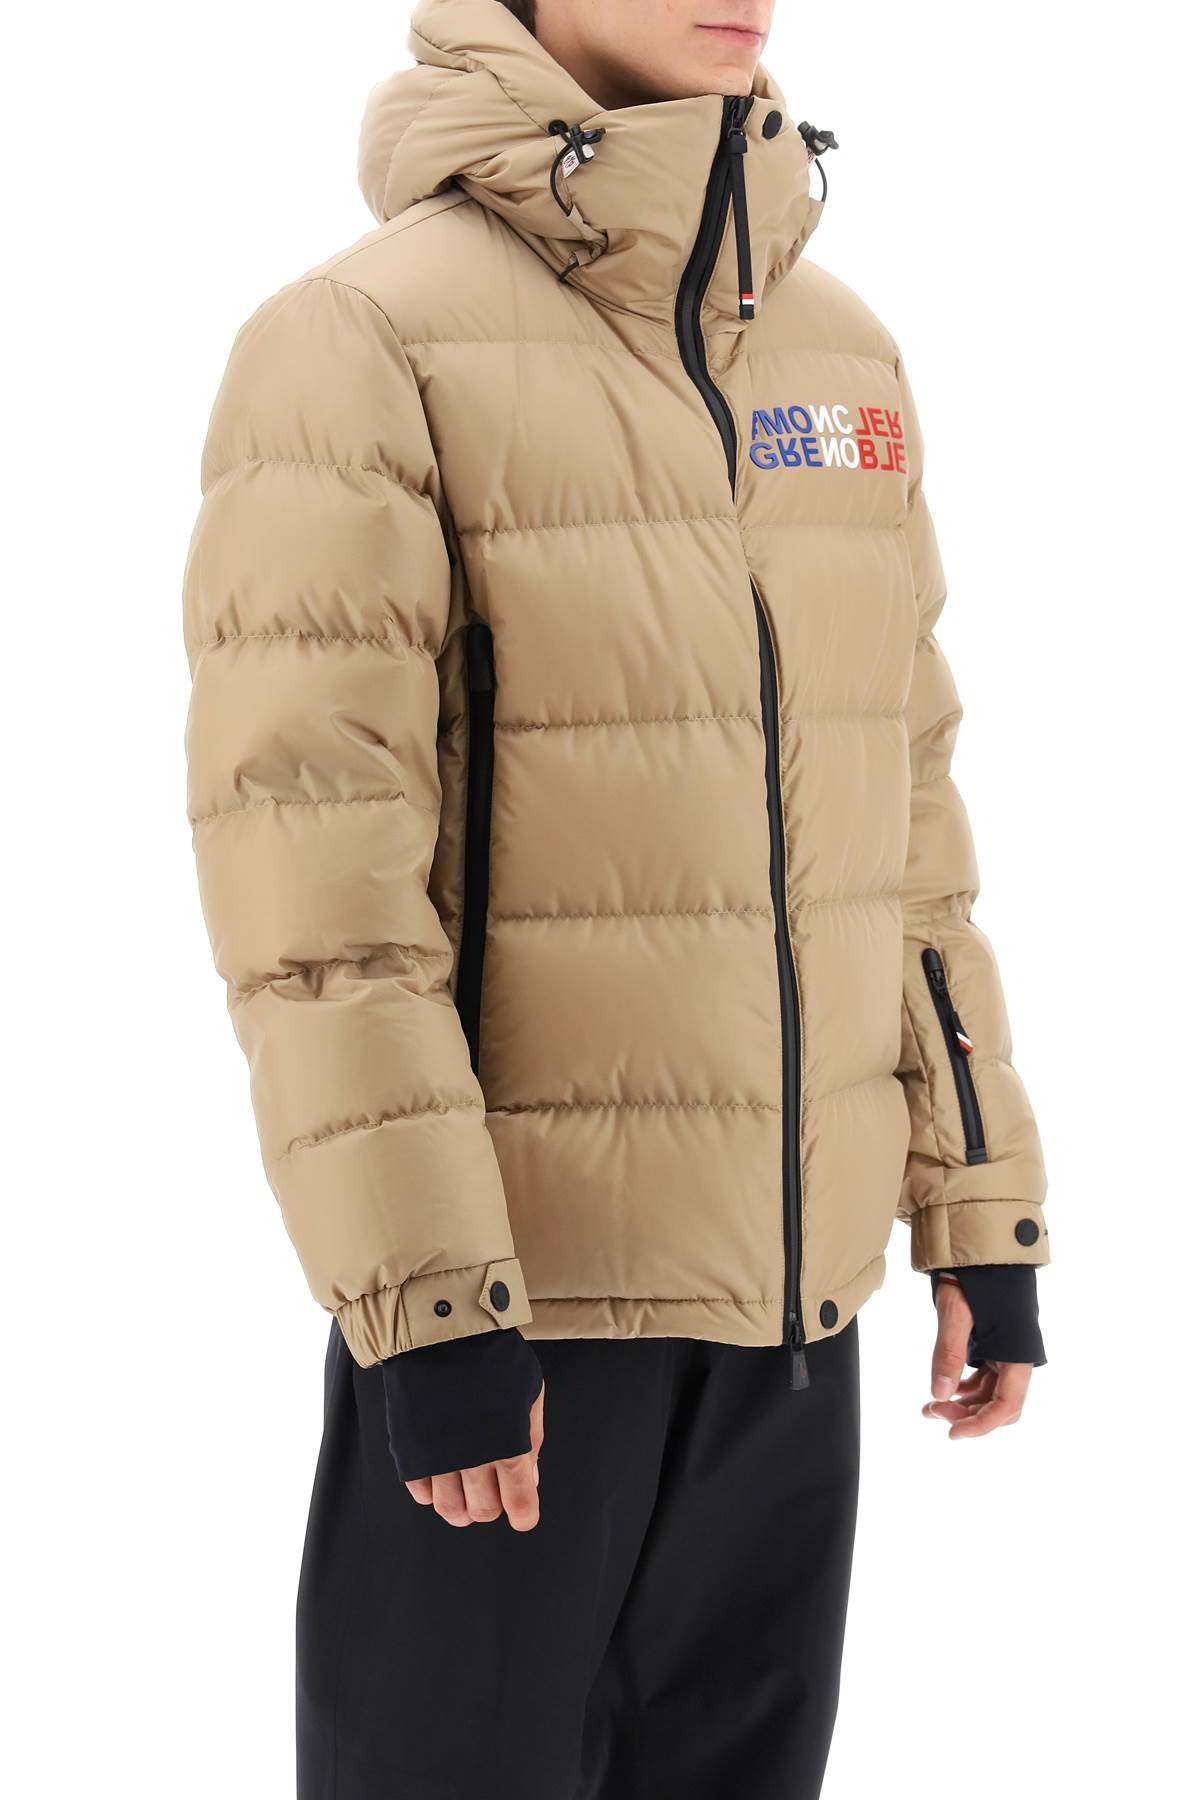 MONCLER GRENOBLE Men's Beige Ski Down Jacket with Logo Patch and Adjustable Hem